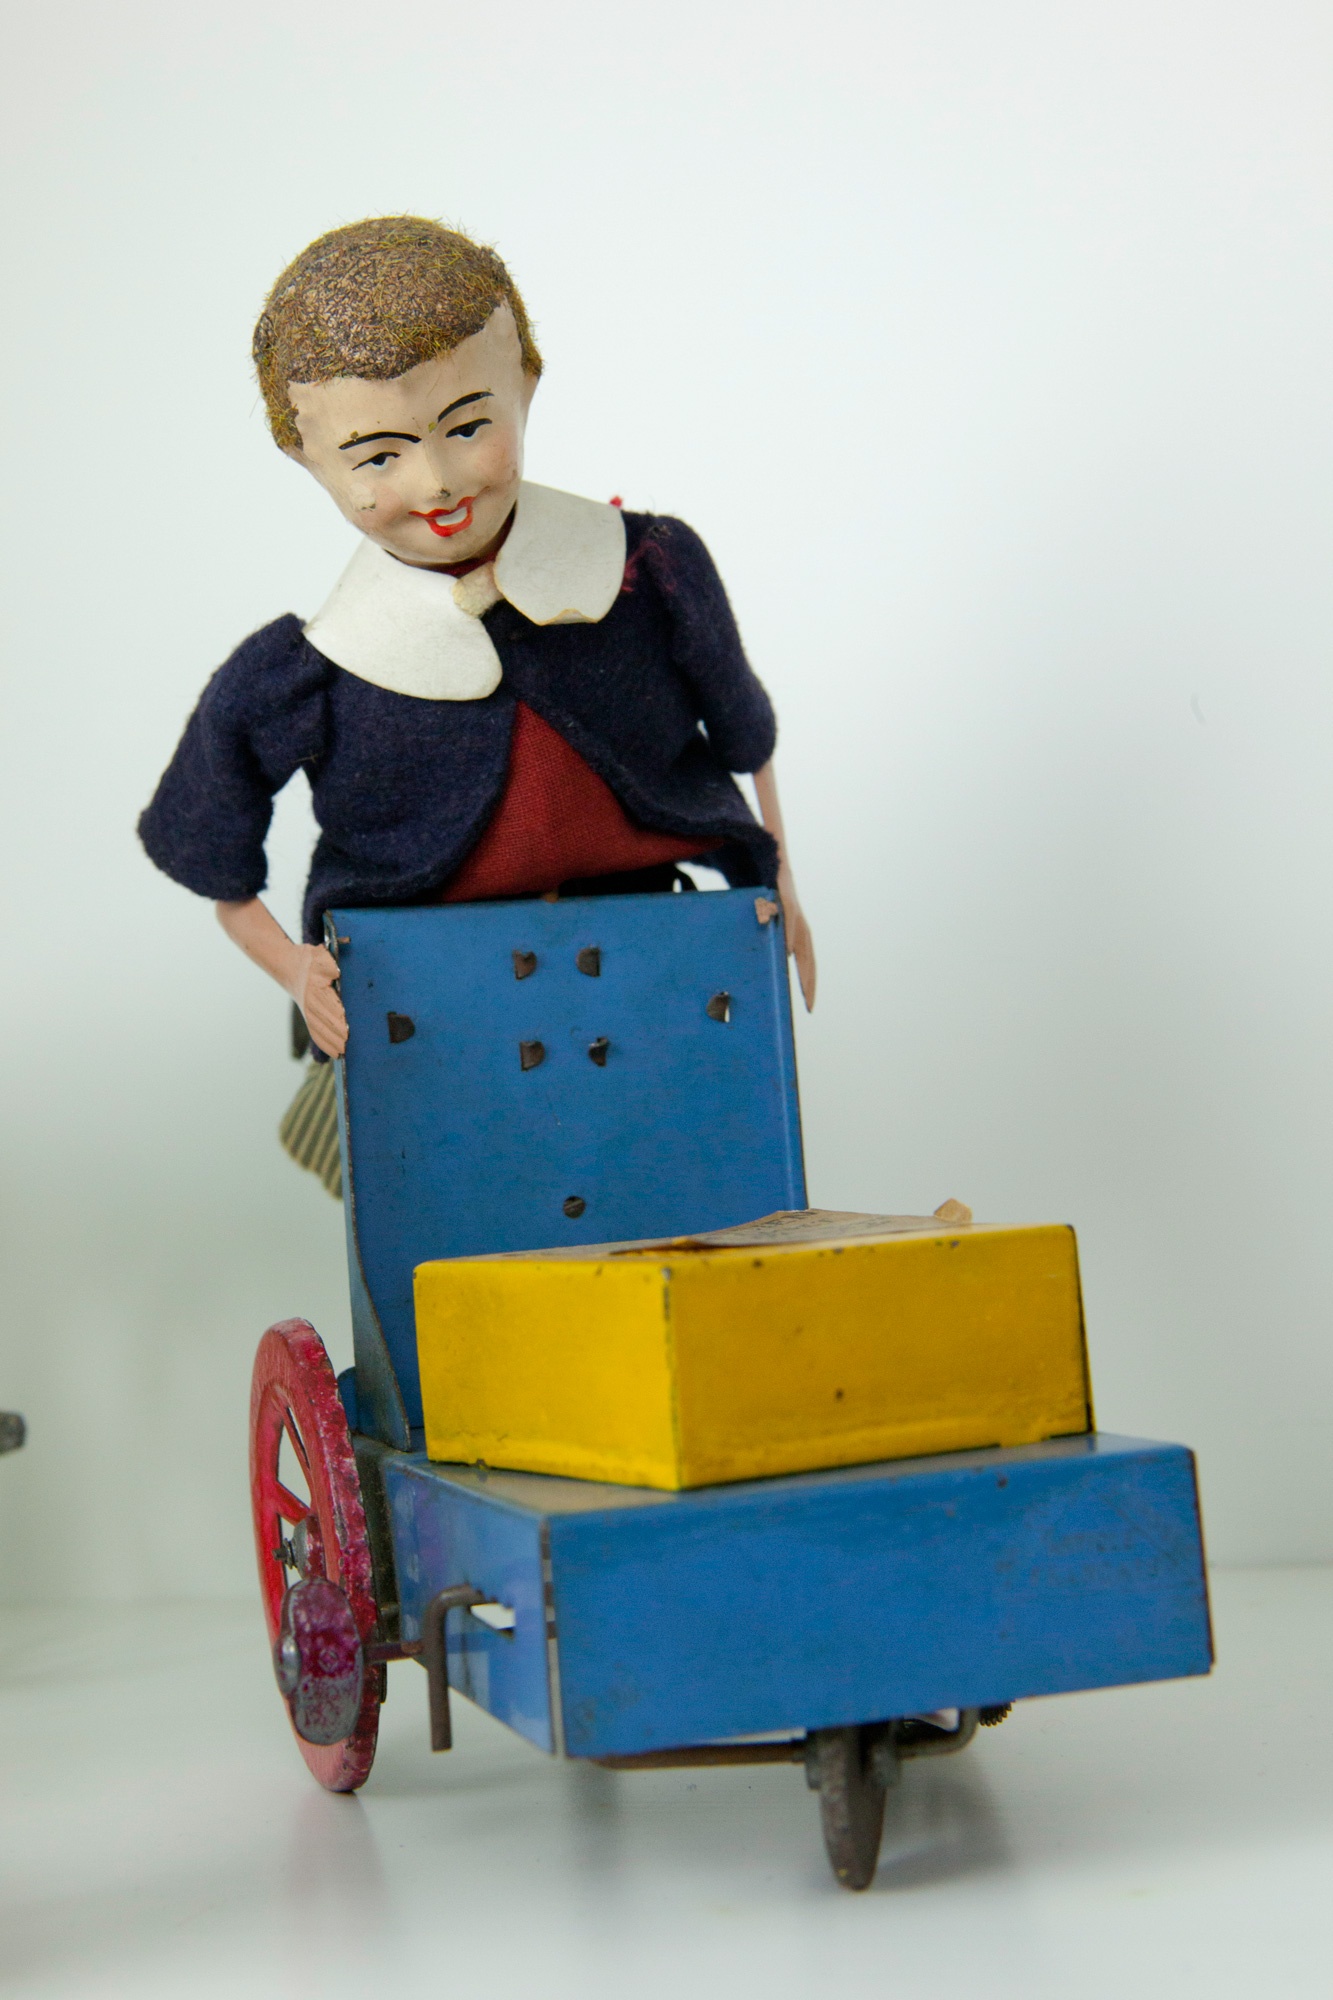 Expressbote Martin (Das Kleine Museum - Spielzeug aus zwei Jahrhunderten CC BY)